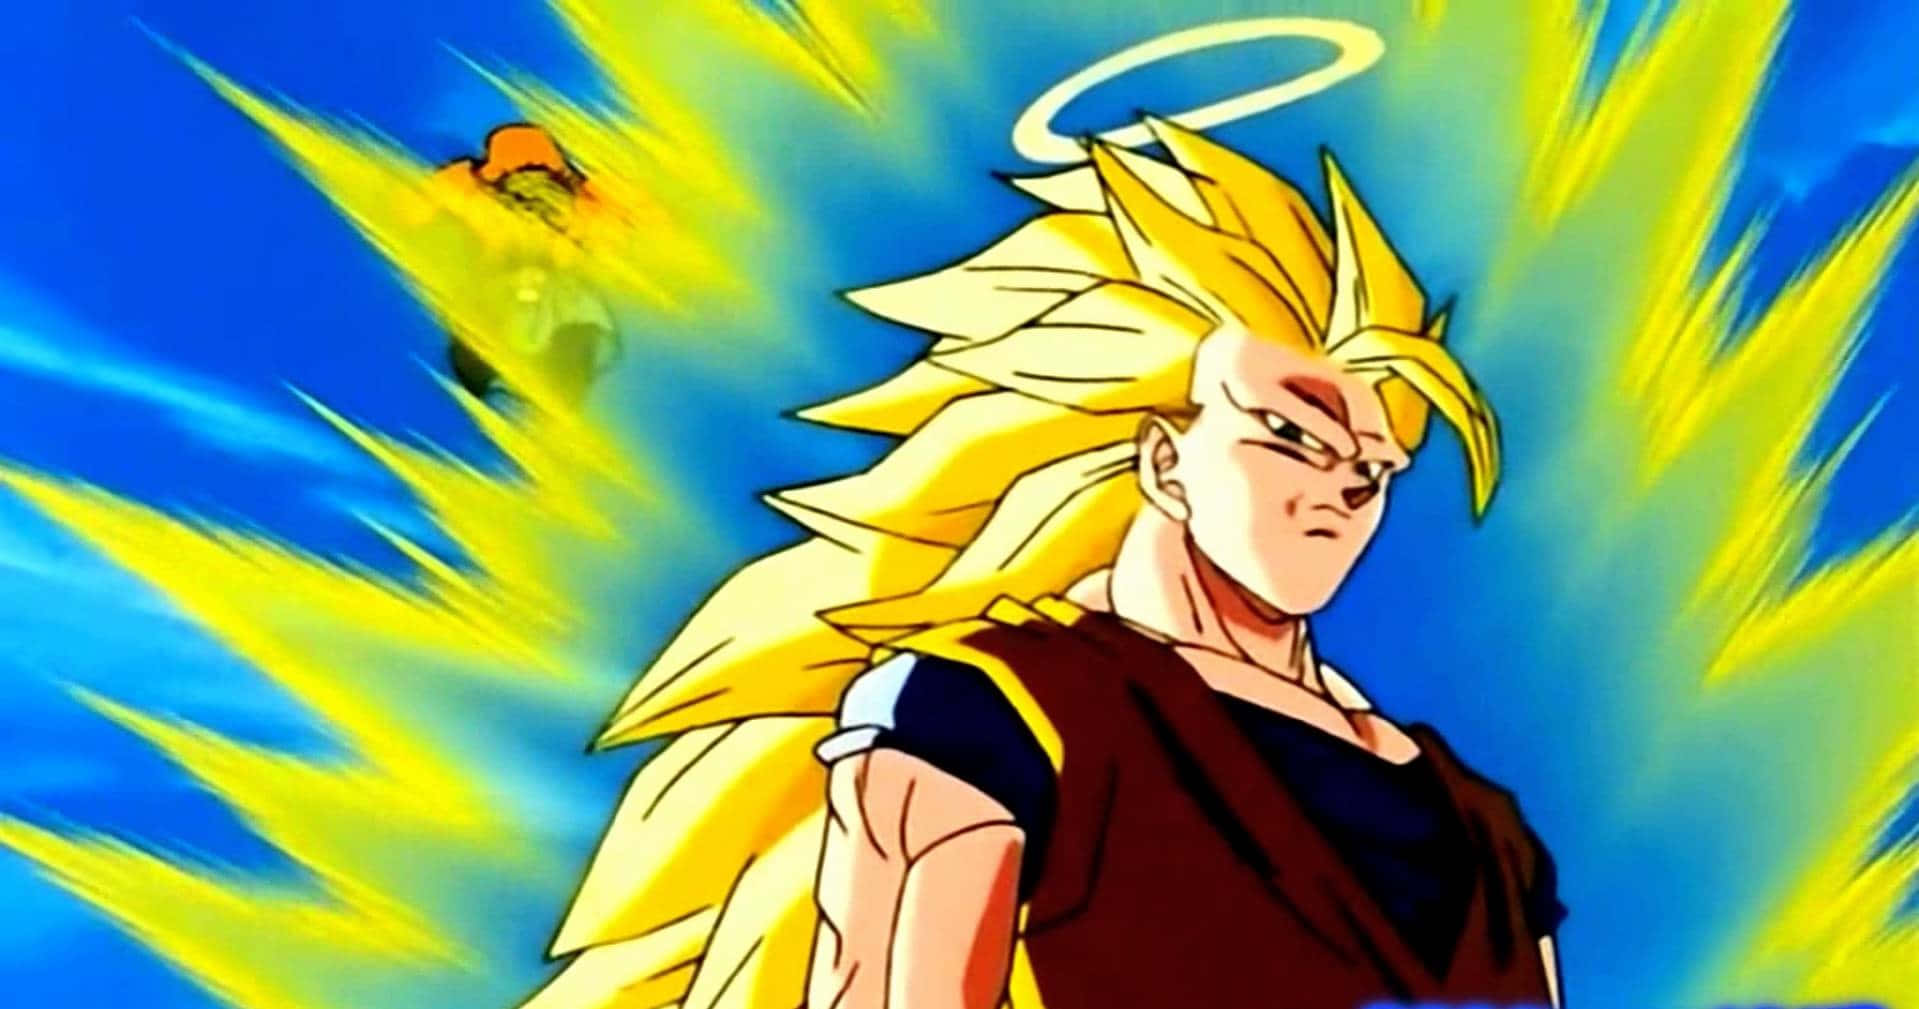 "Goku Transforms Into Super Saiyan 3" Wallpaper